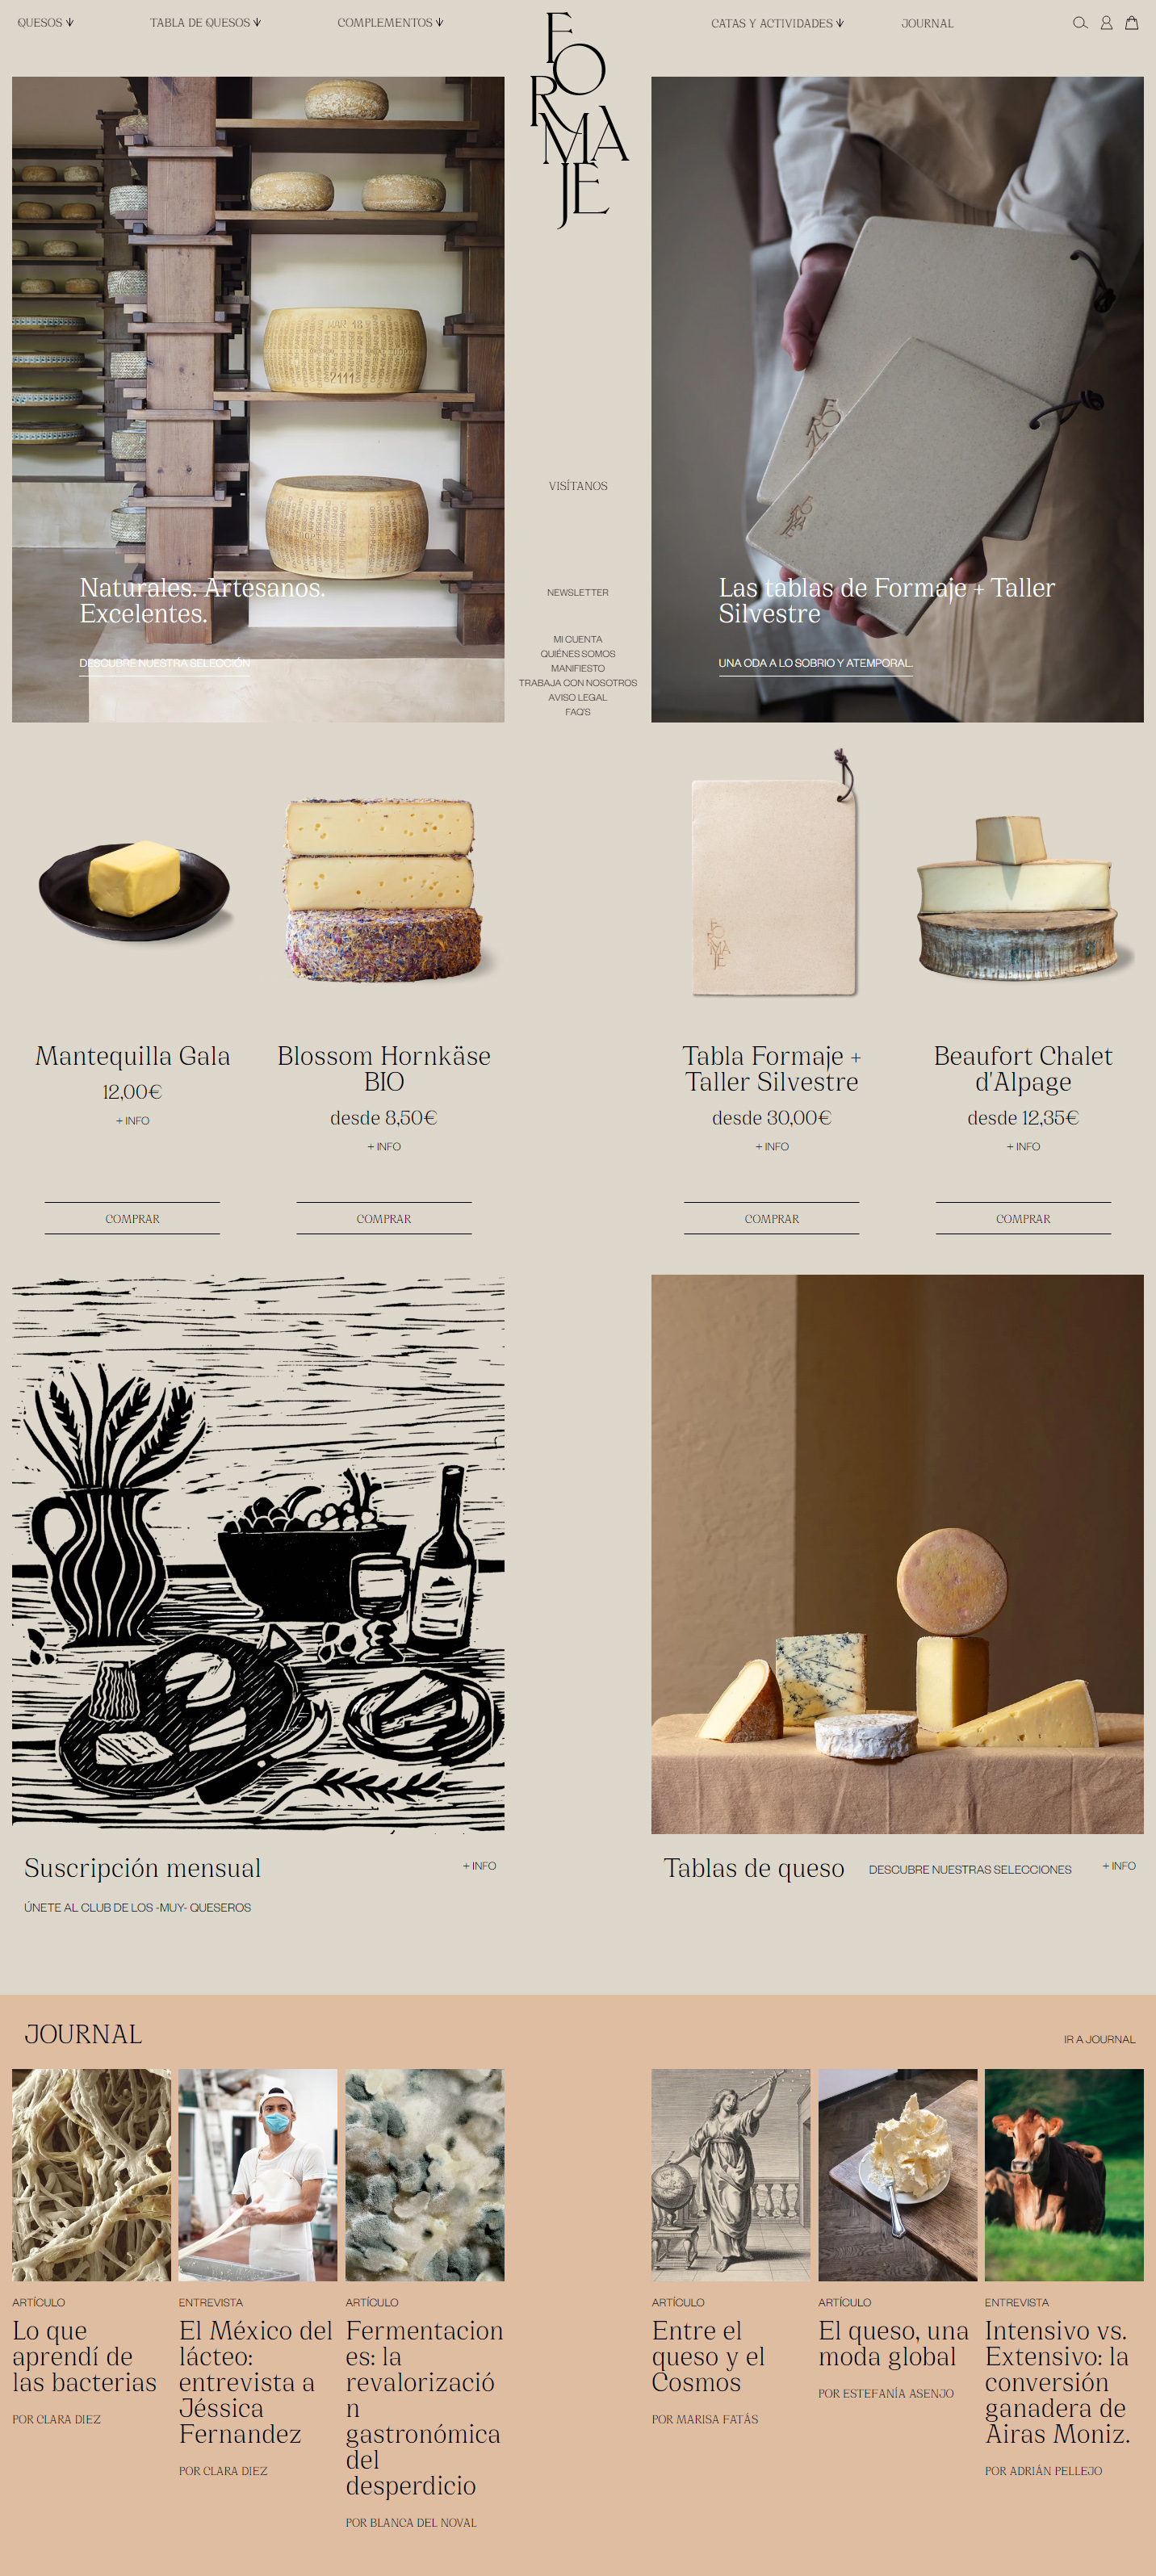 Formaje奶酪产品网站设计